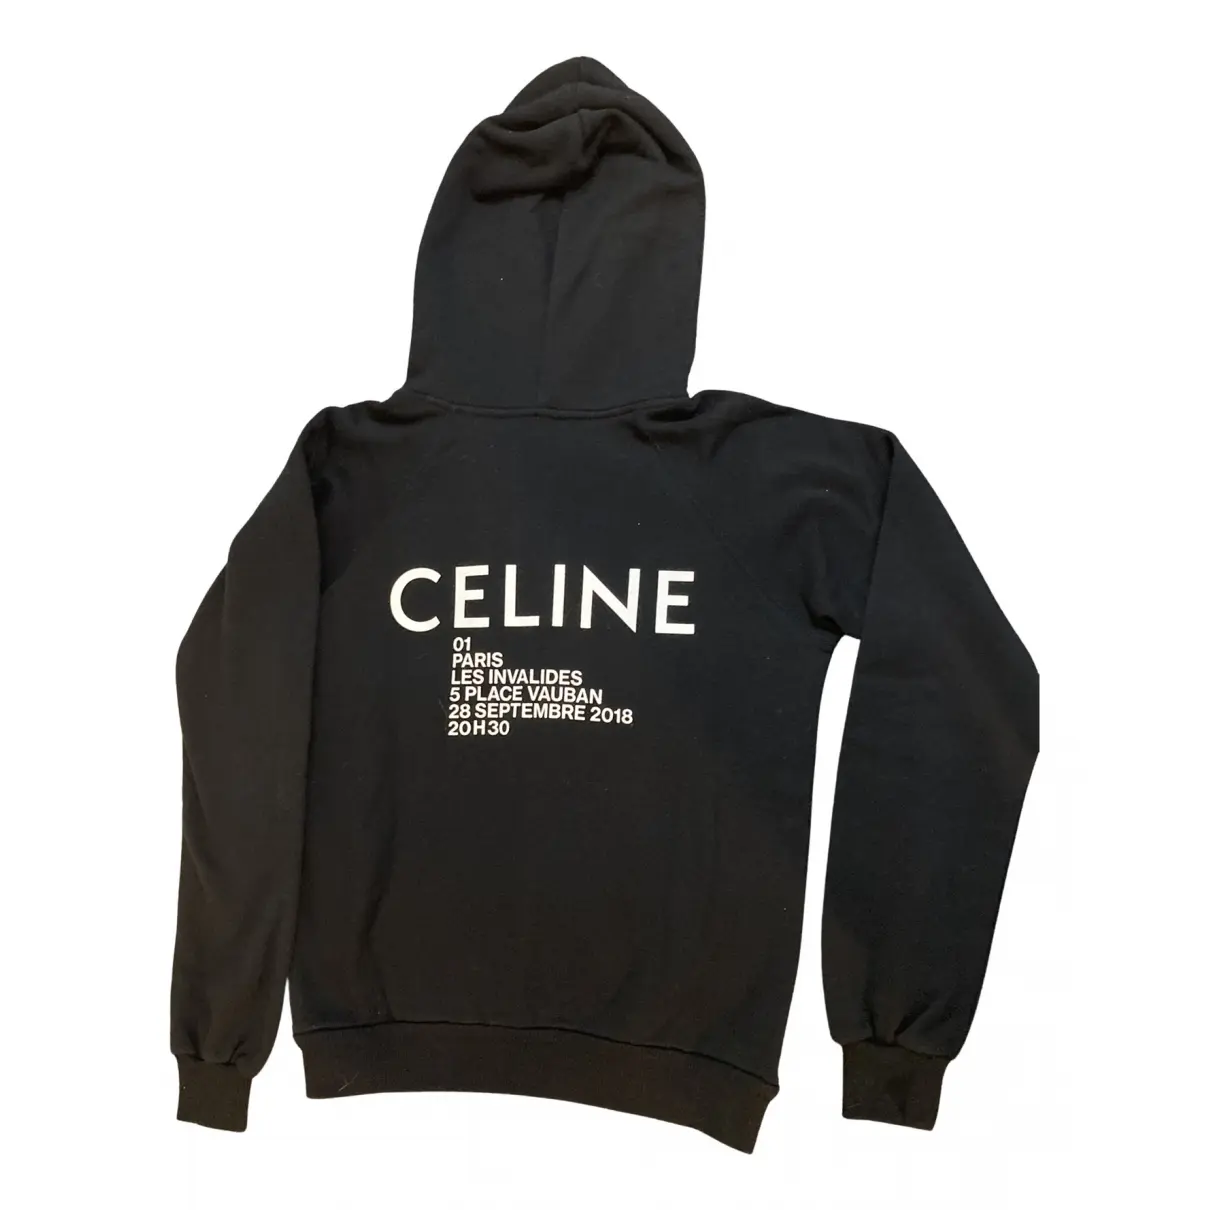 Buy Celine Knitwear online